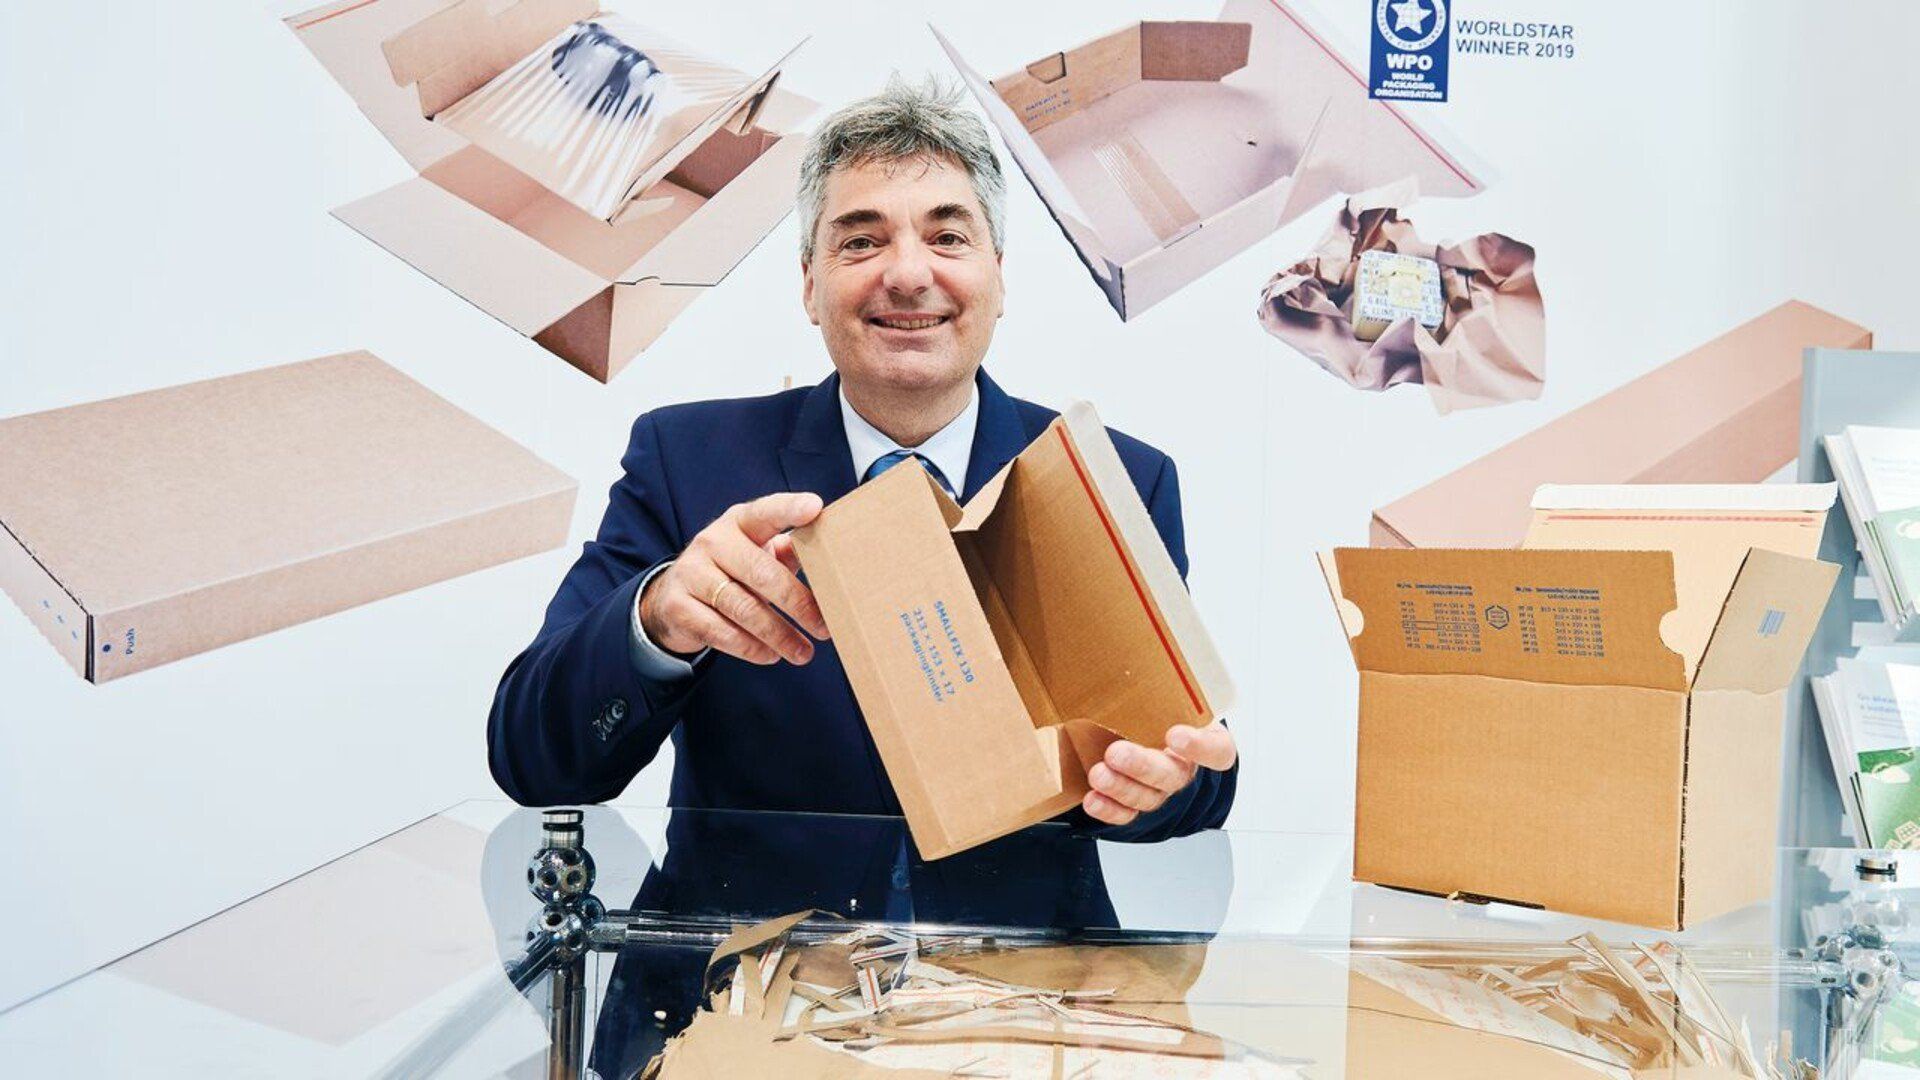 Messe Fachpack in Nürnberg - Gut eingepackt: Joachim Heckler von Drei-V zeigt Verpackungen für den Versandhandel.